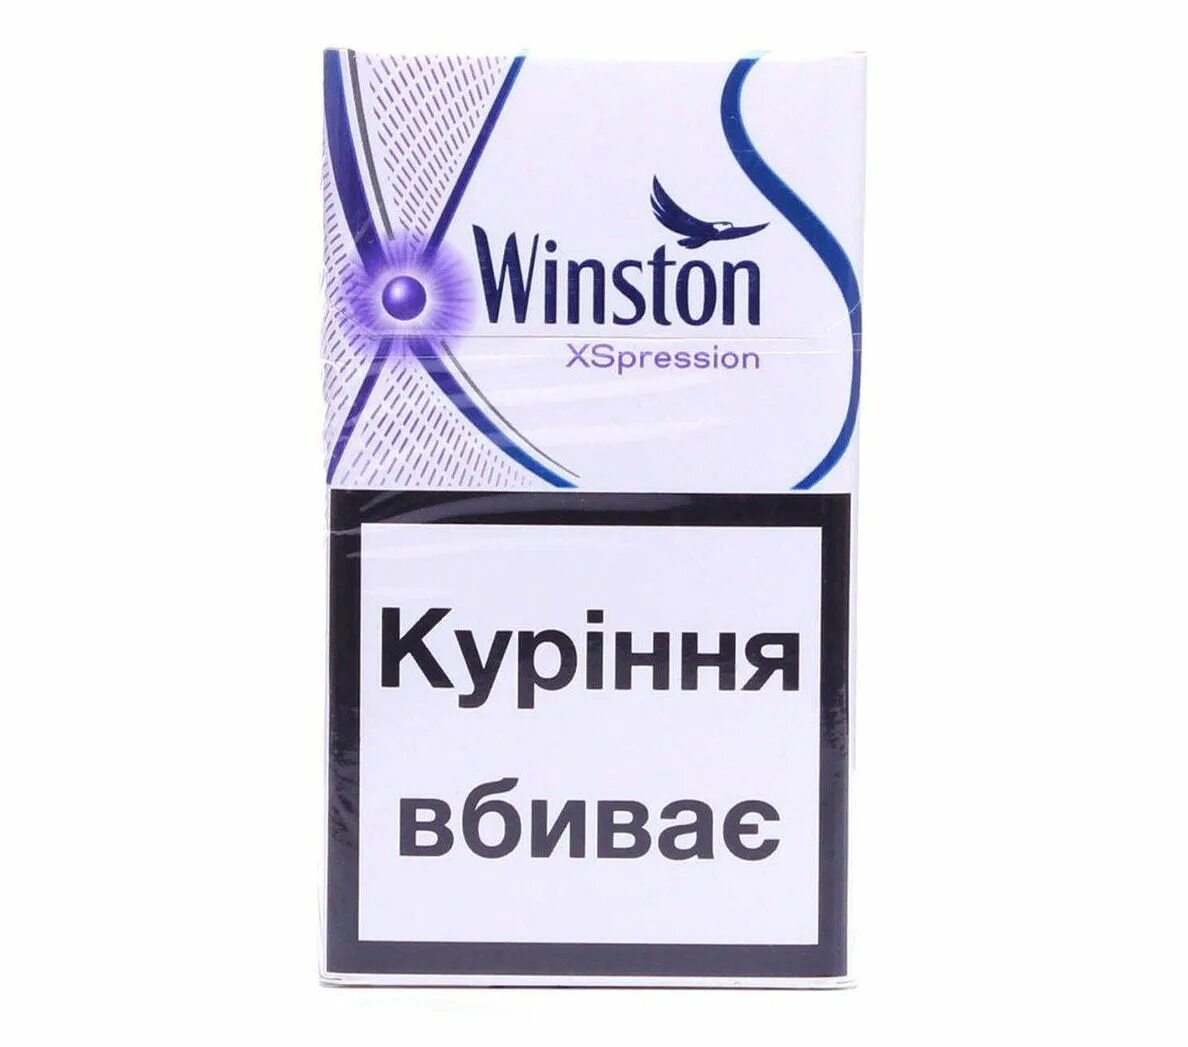 Сигареты Winston XSPRESSION. Сигареты Winston XS XSPRESSION Impulse. Winston XSPRESSION Purple. Winston XS Impulse Compact.